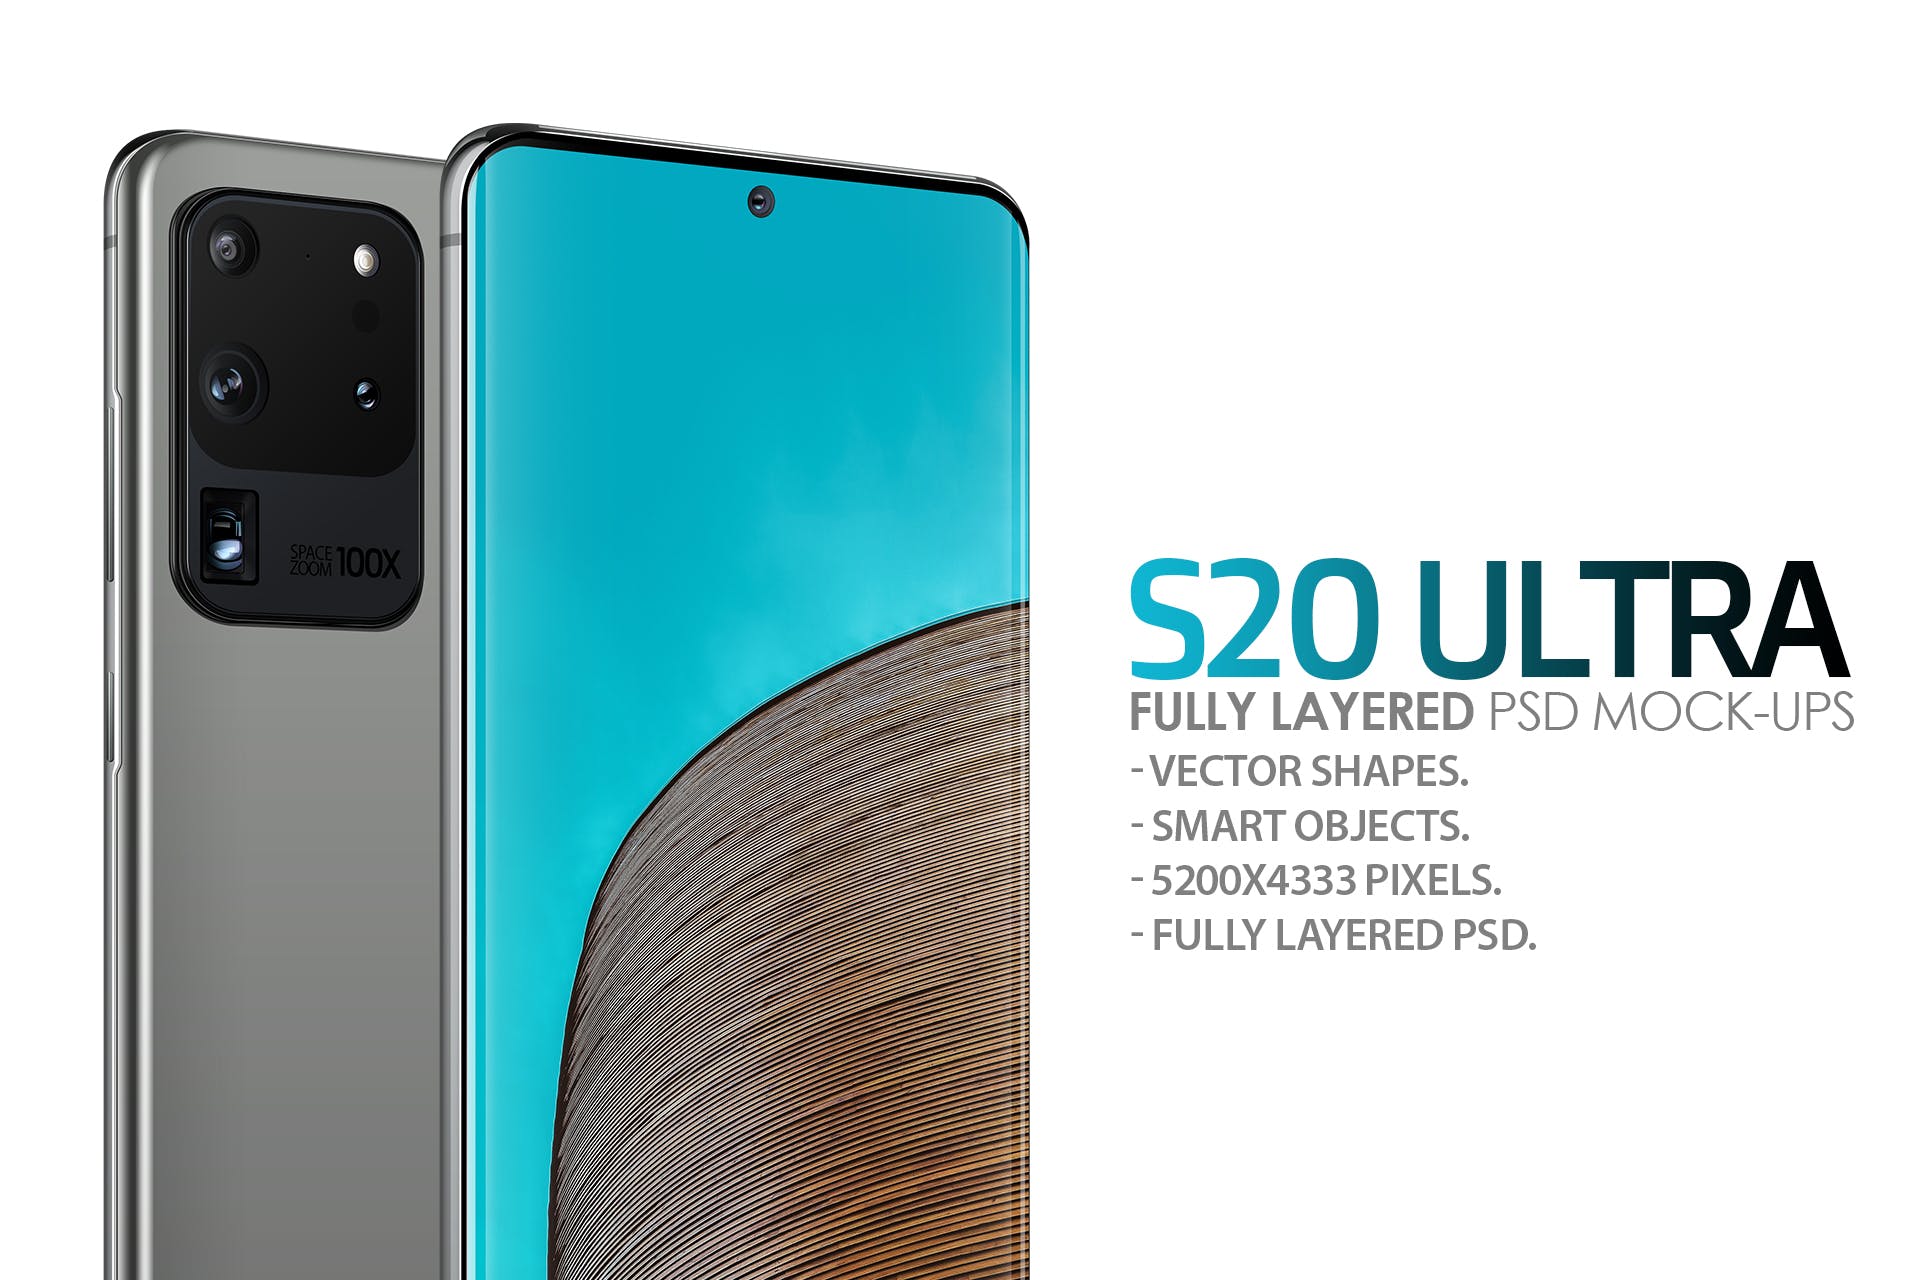 三星Galaxy S20 Ultra智能手机UI设计屏幕预览第一素材精选样机 S20 Ultra Layered PSD Mockups插图